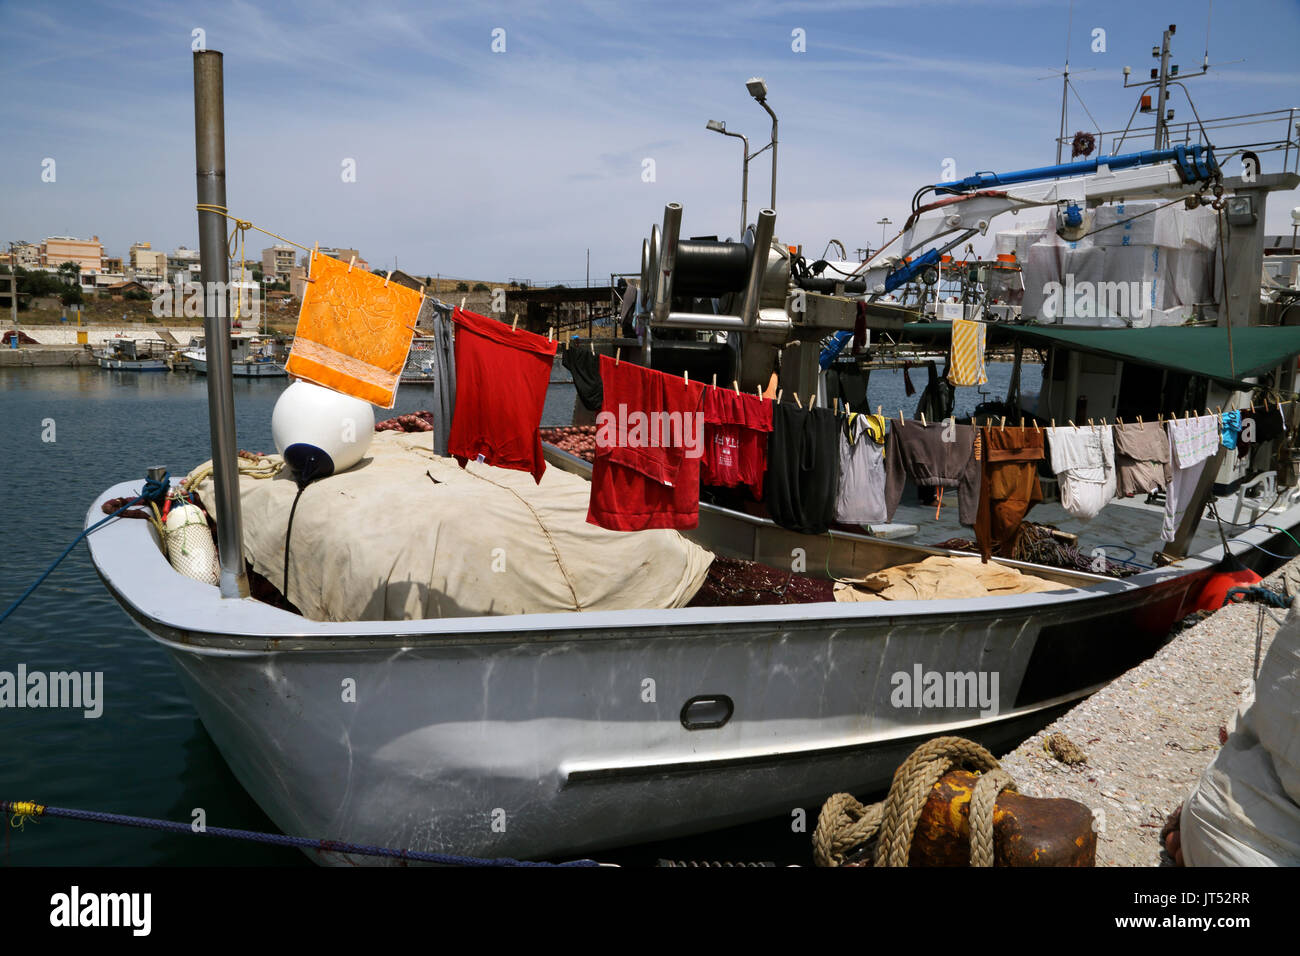 Port de Lavrio Grèce Attique lave-Hanging on line à sécher sur bateau de pêche Banque D'Images